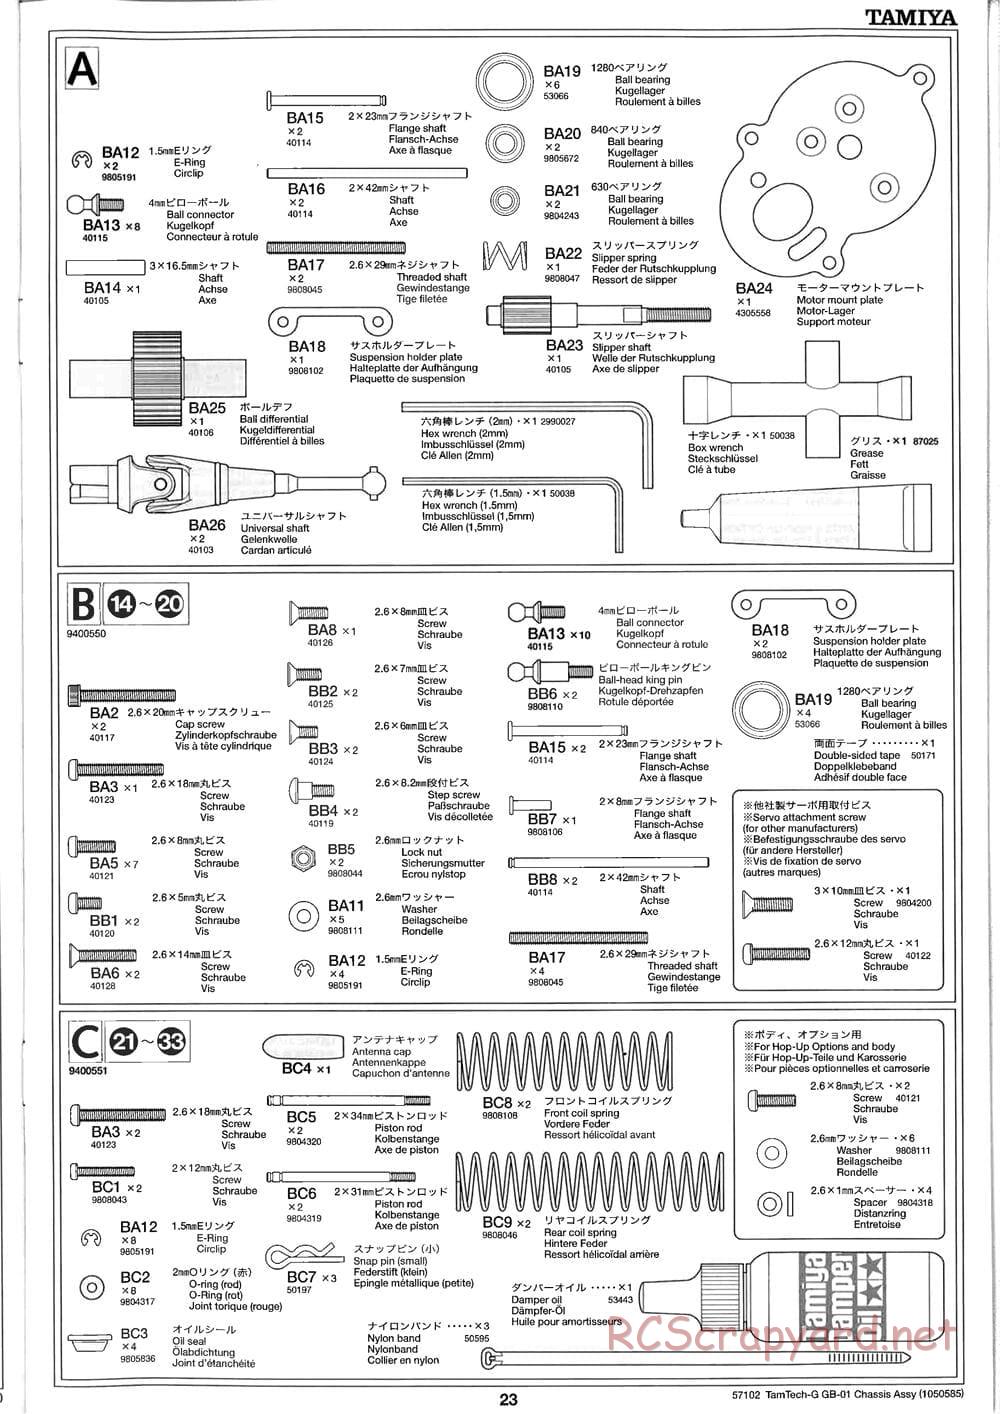 Tamiya - GB-01 Chassis - Manual - Page 23